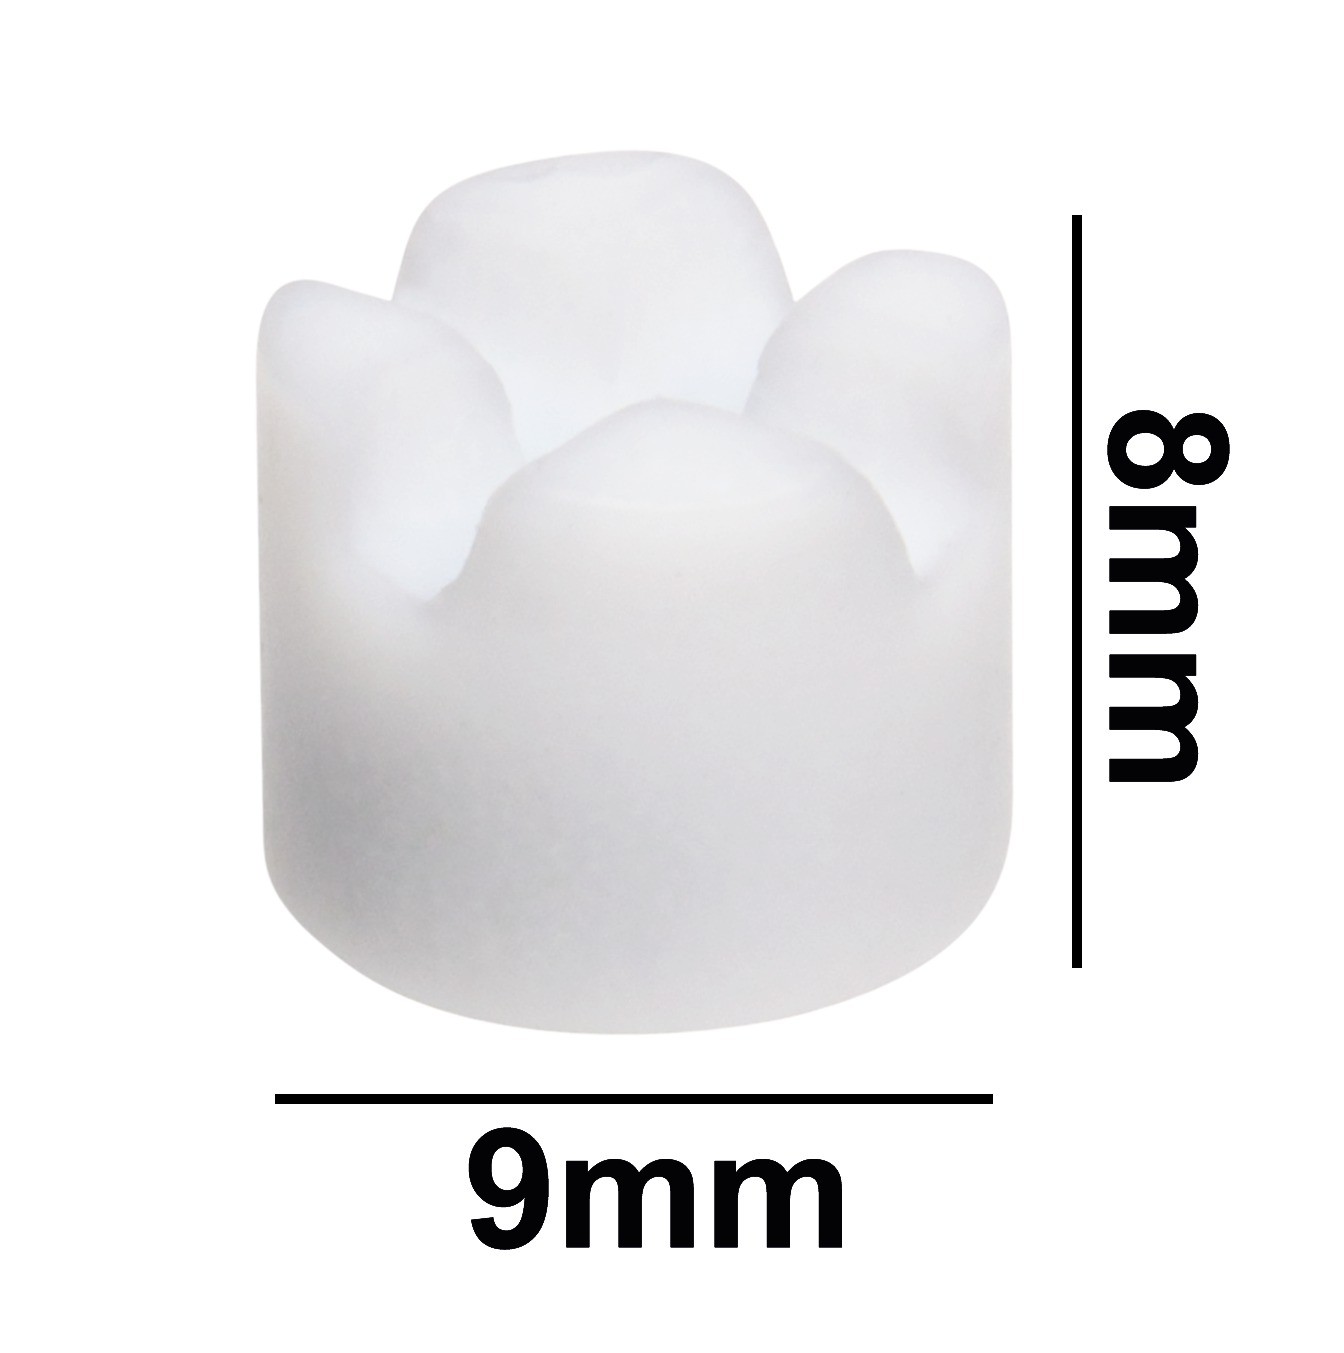 SP Bel-Art Spinbar Teflon Cell (Cuvette) Magnetic Stirring Bar; 9 x 8mm, White